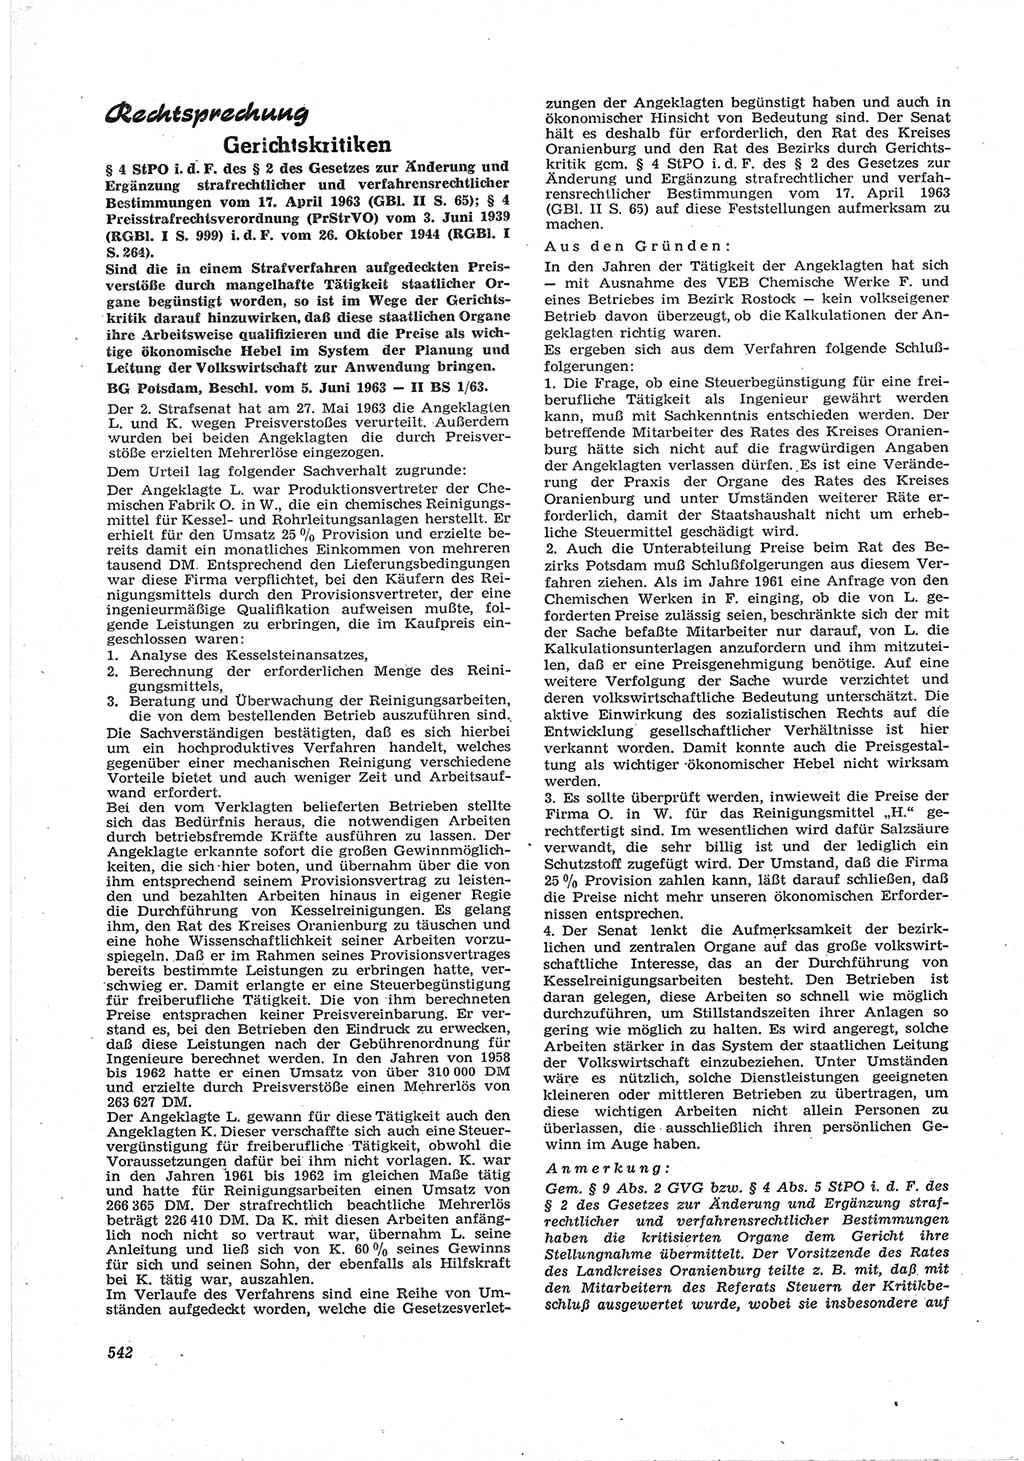 Neue Justiz (NJ), Zeitschrift für Recht und Rechtswissenschaft [Deutsche Demokratische Republik (DDR)], 17. Jahrgang 1963, Seite 542 (NJ DDR 1963, S. 542)